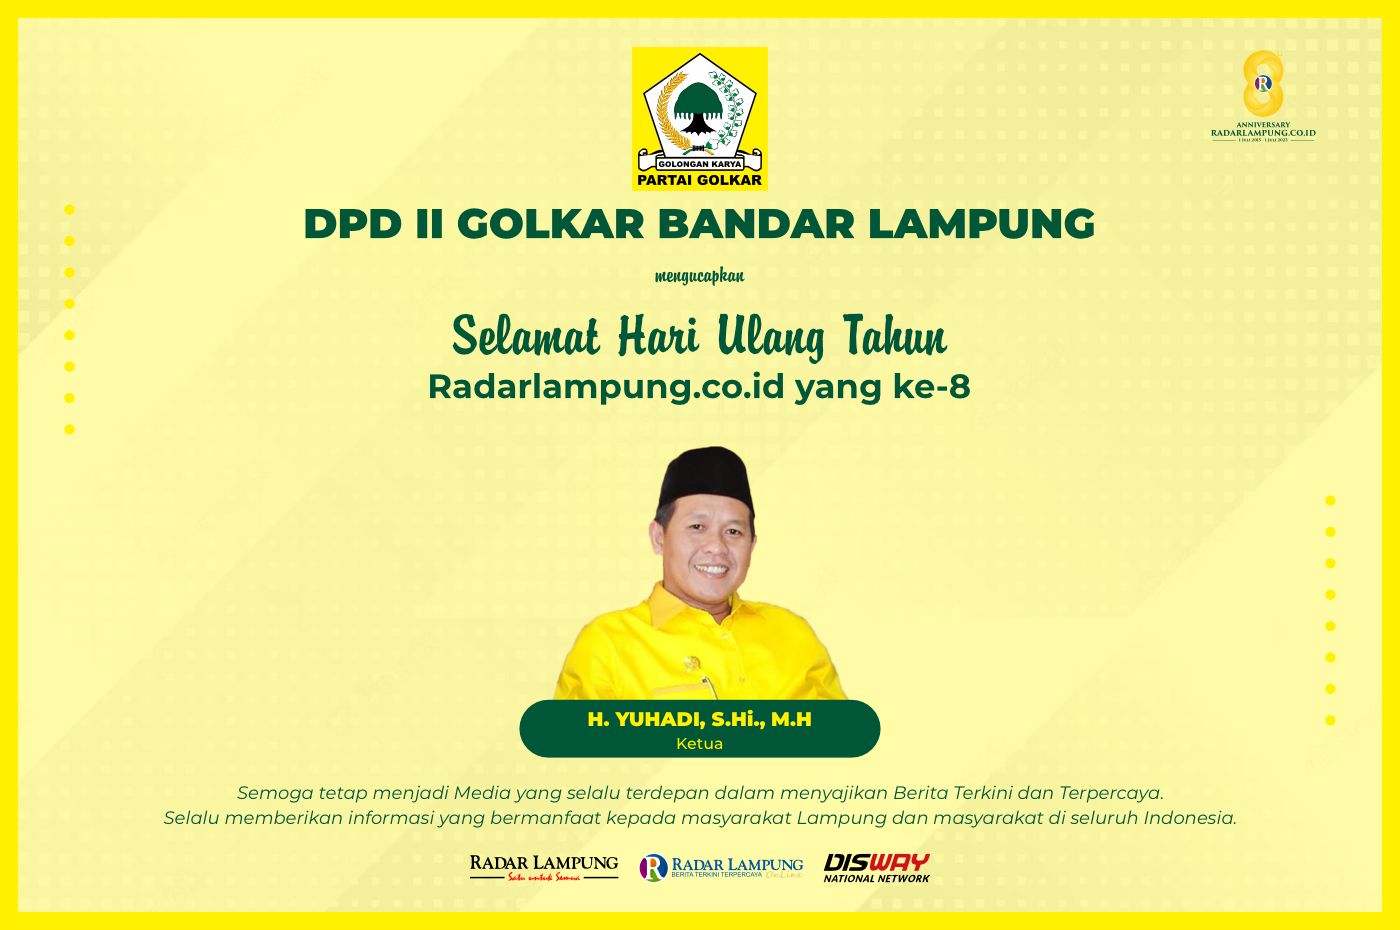 DPD II Golkar Bandar Lampung: Selamat HUT ke-8 Radar Lampung Online